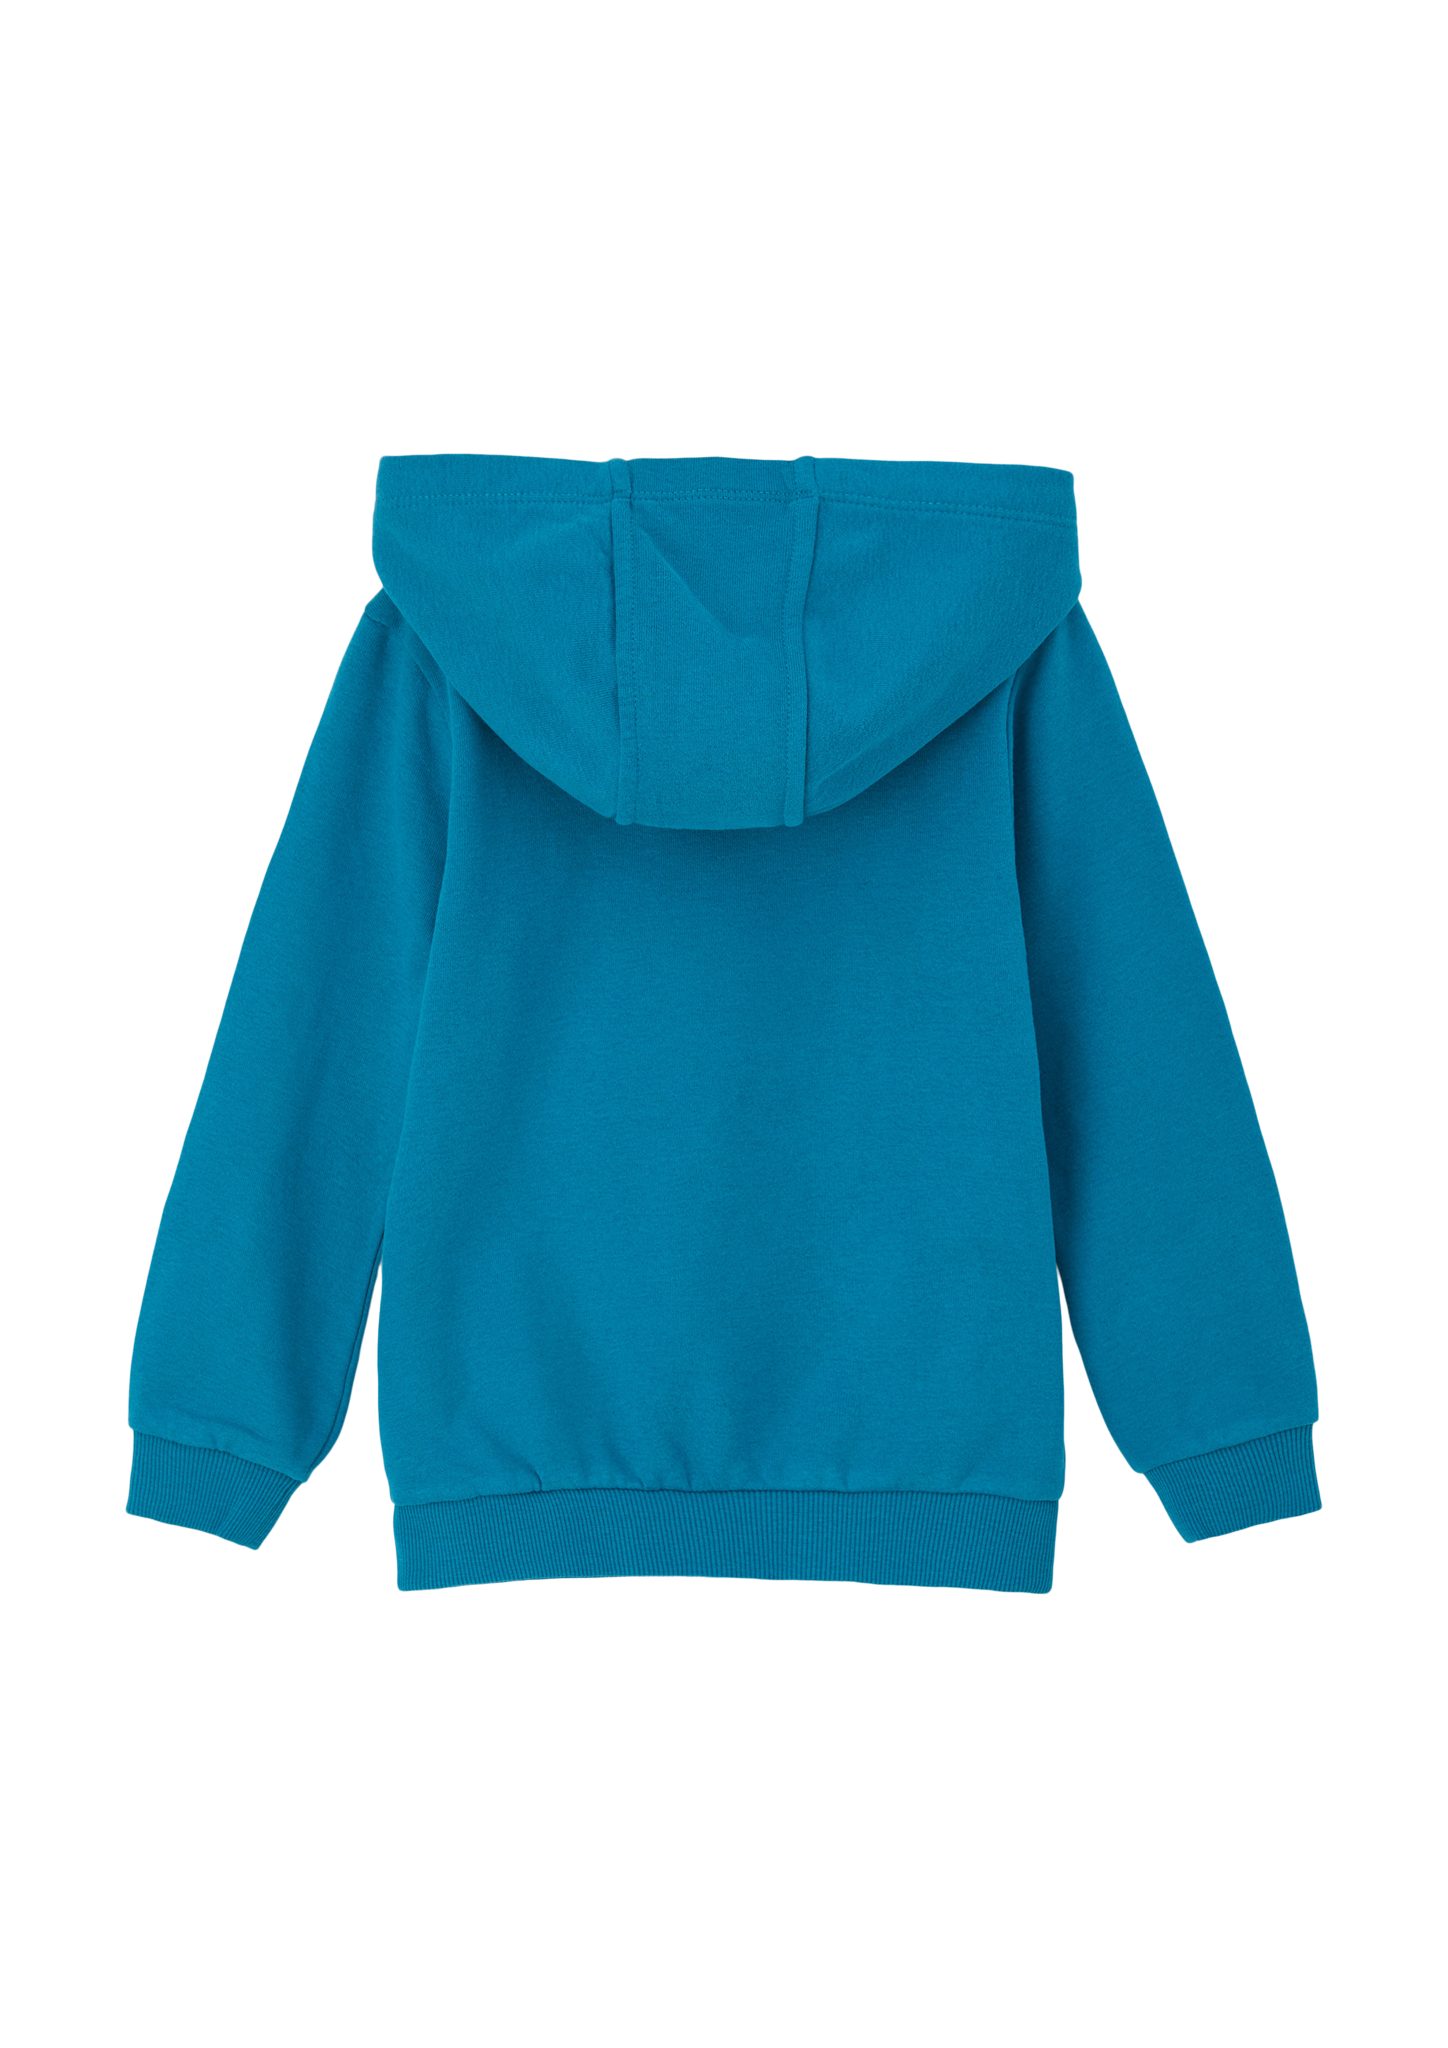 s.Oliver mit Kapuzensweater Sweatshirt Innenseite weicher azurblau